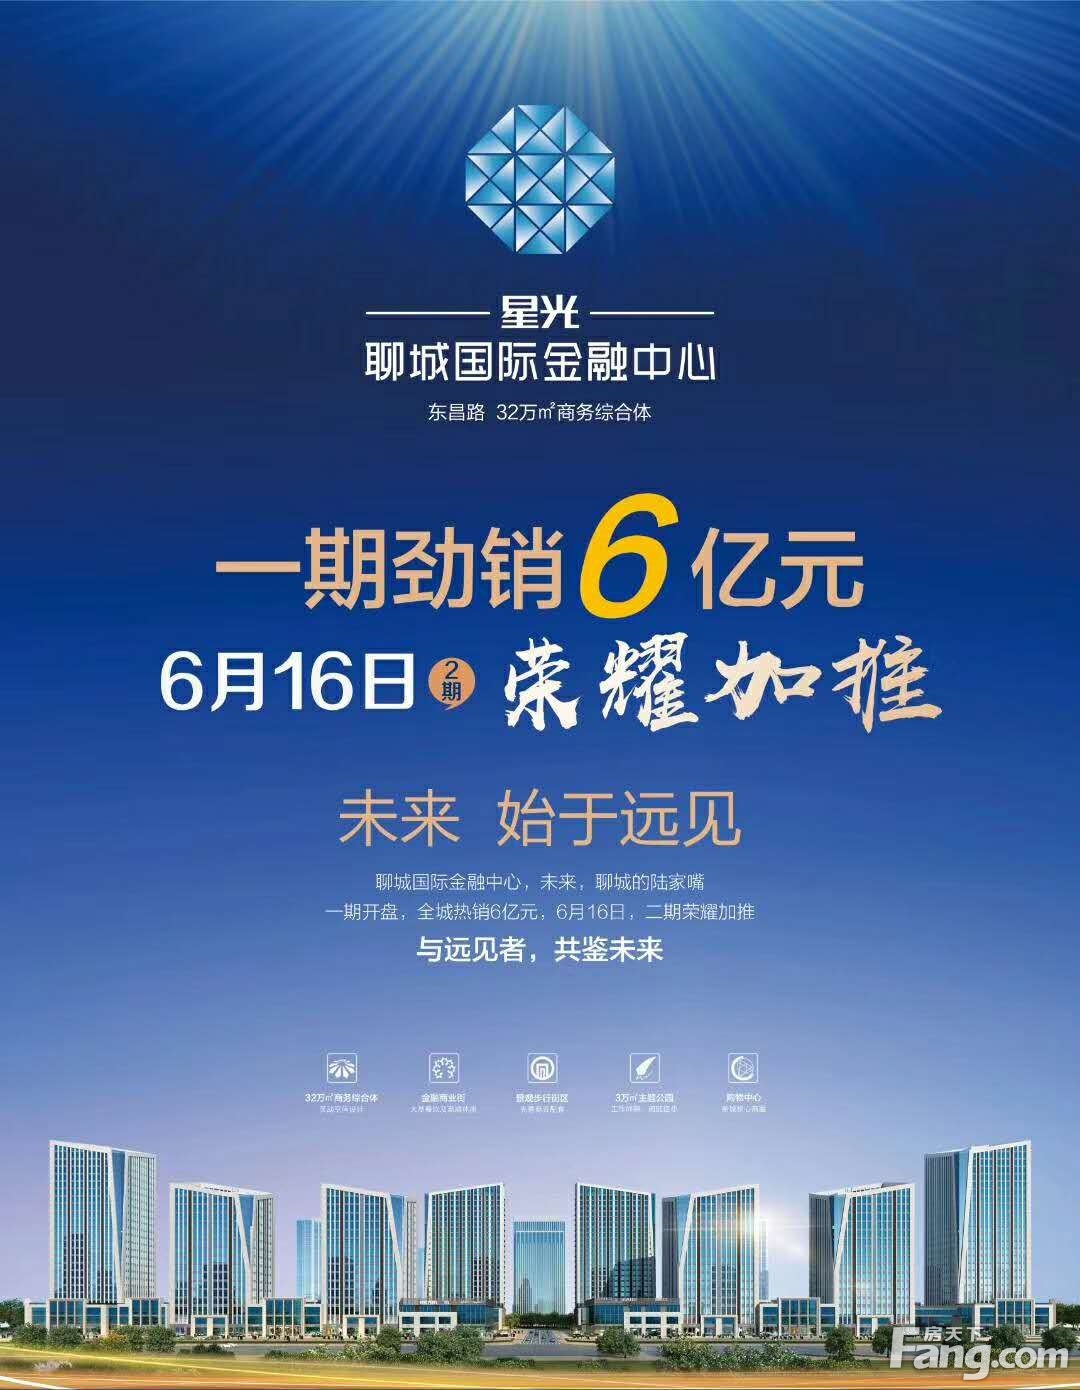 星光·聊城国际金融中心一期劲销6亿 二期6月16日荣耀加推